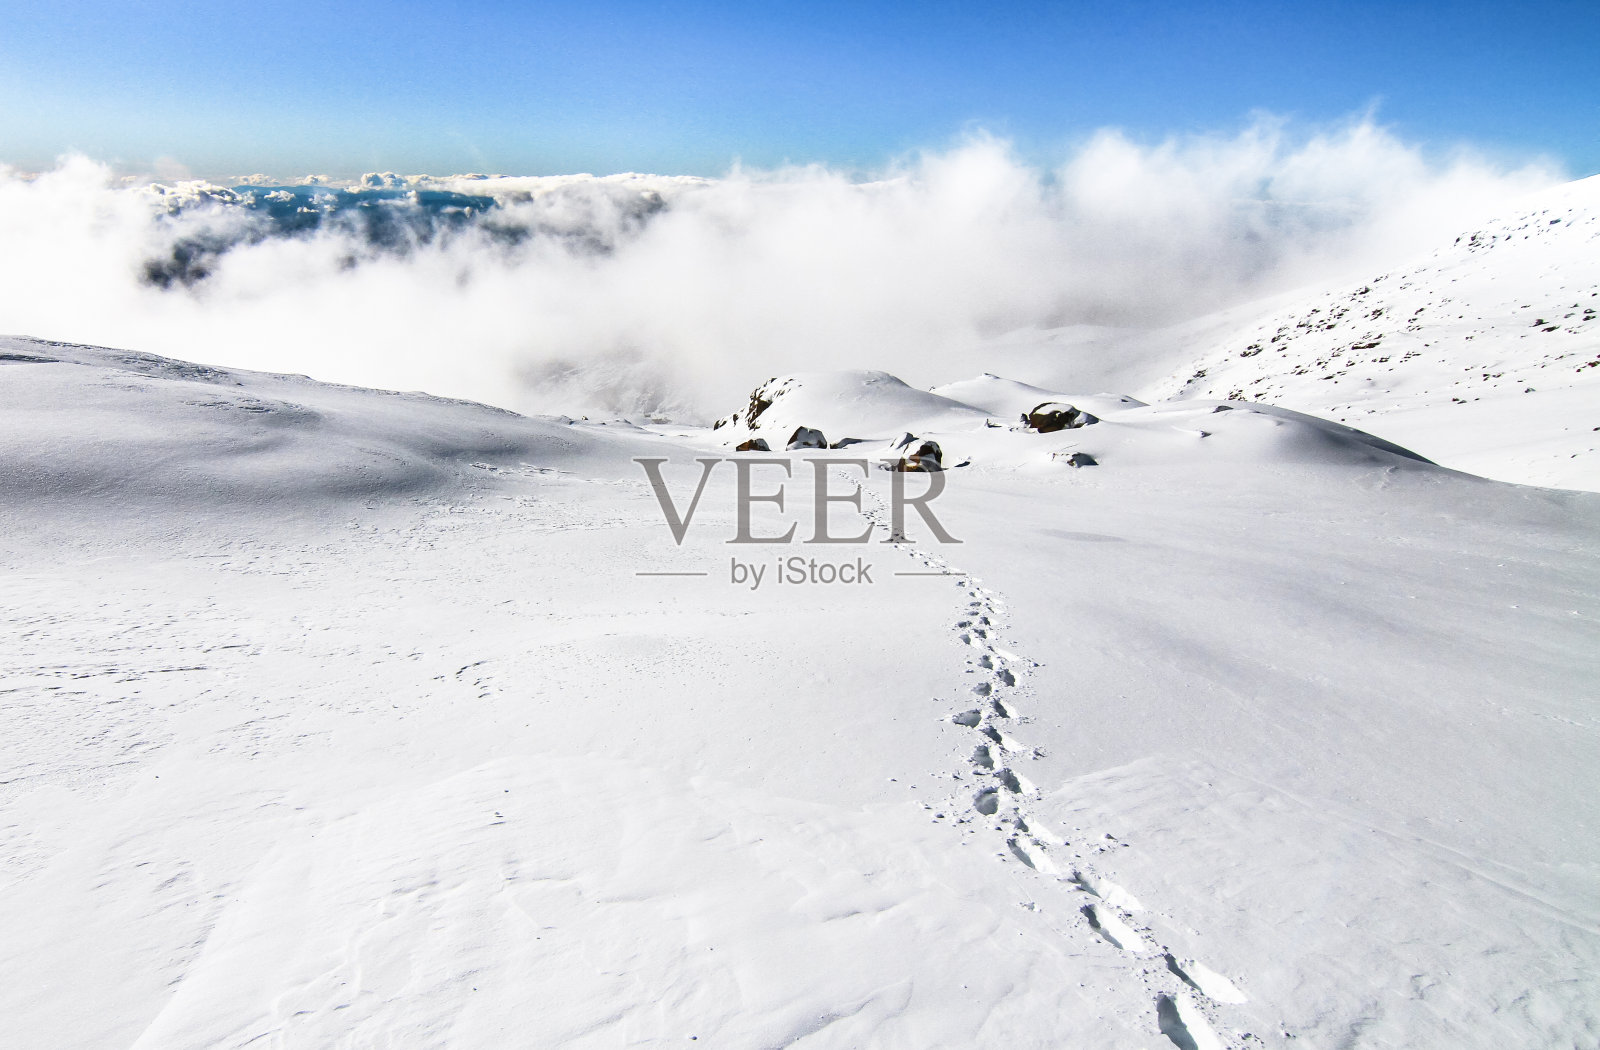 新西兰鲁阿佩胡山顶附近的雪原照片摄影图片